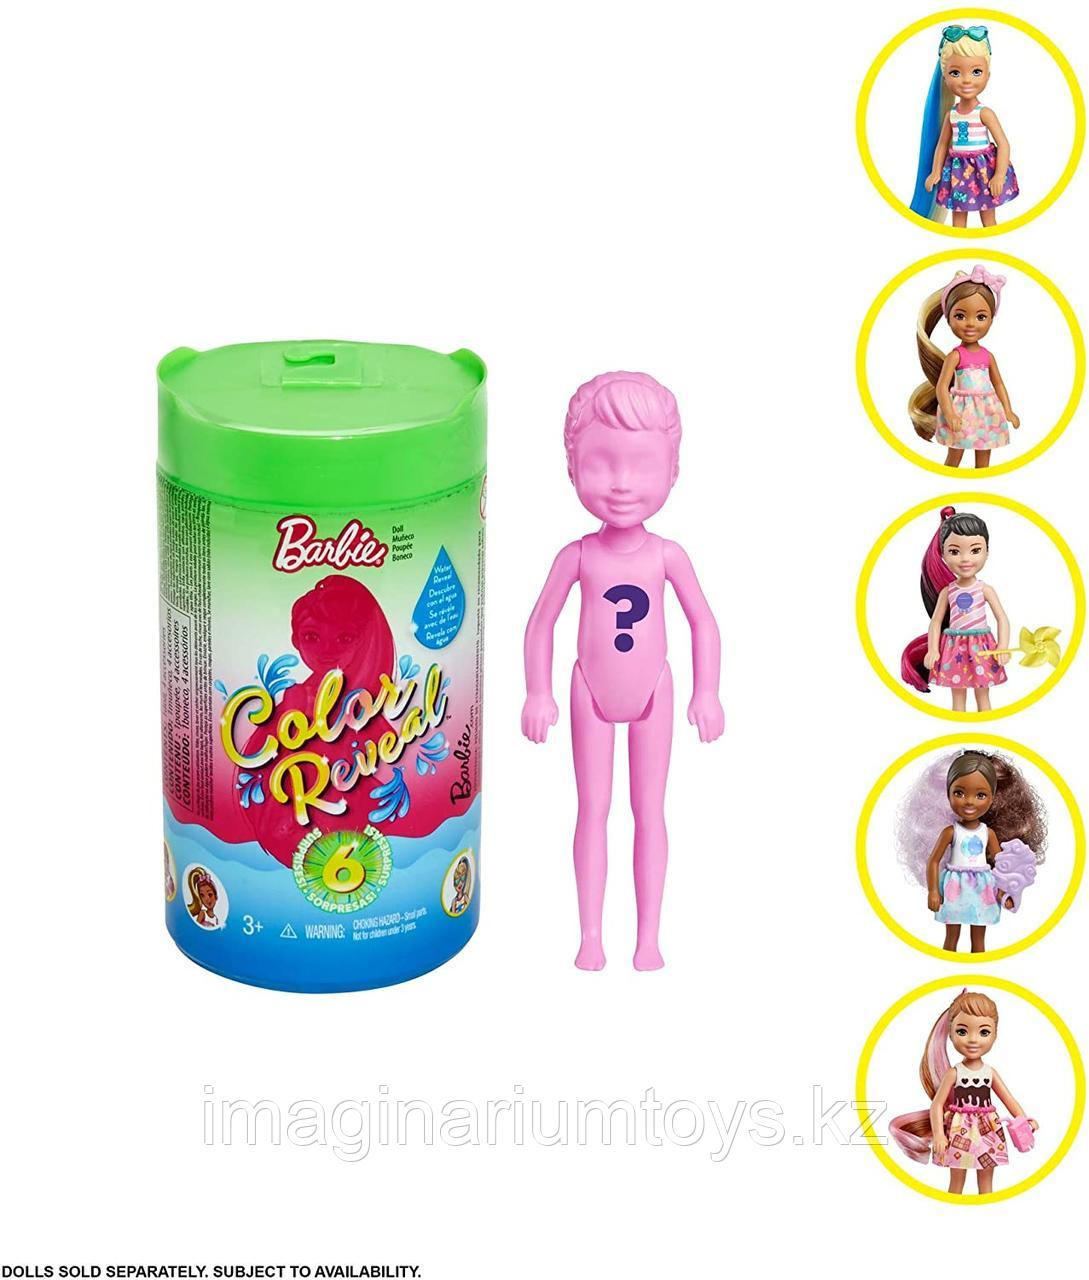 Кукла Челси с водными сюрпризами Barbie Chelsea Color Reveal, фото 1